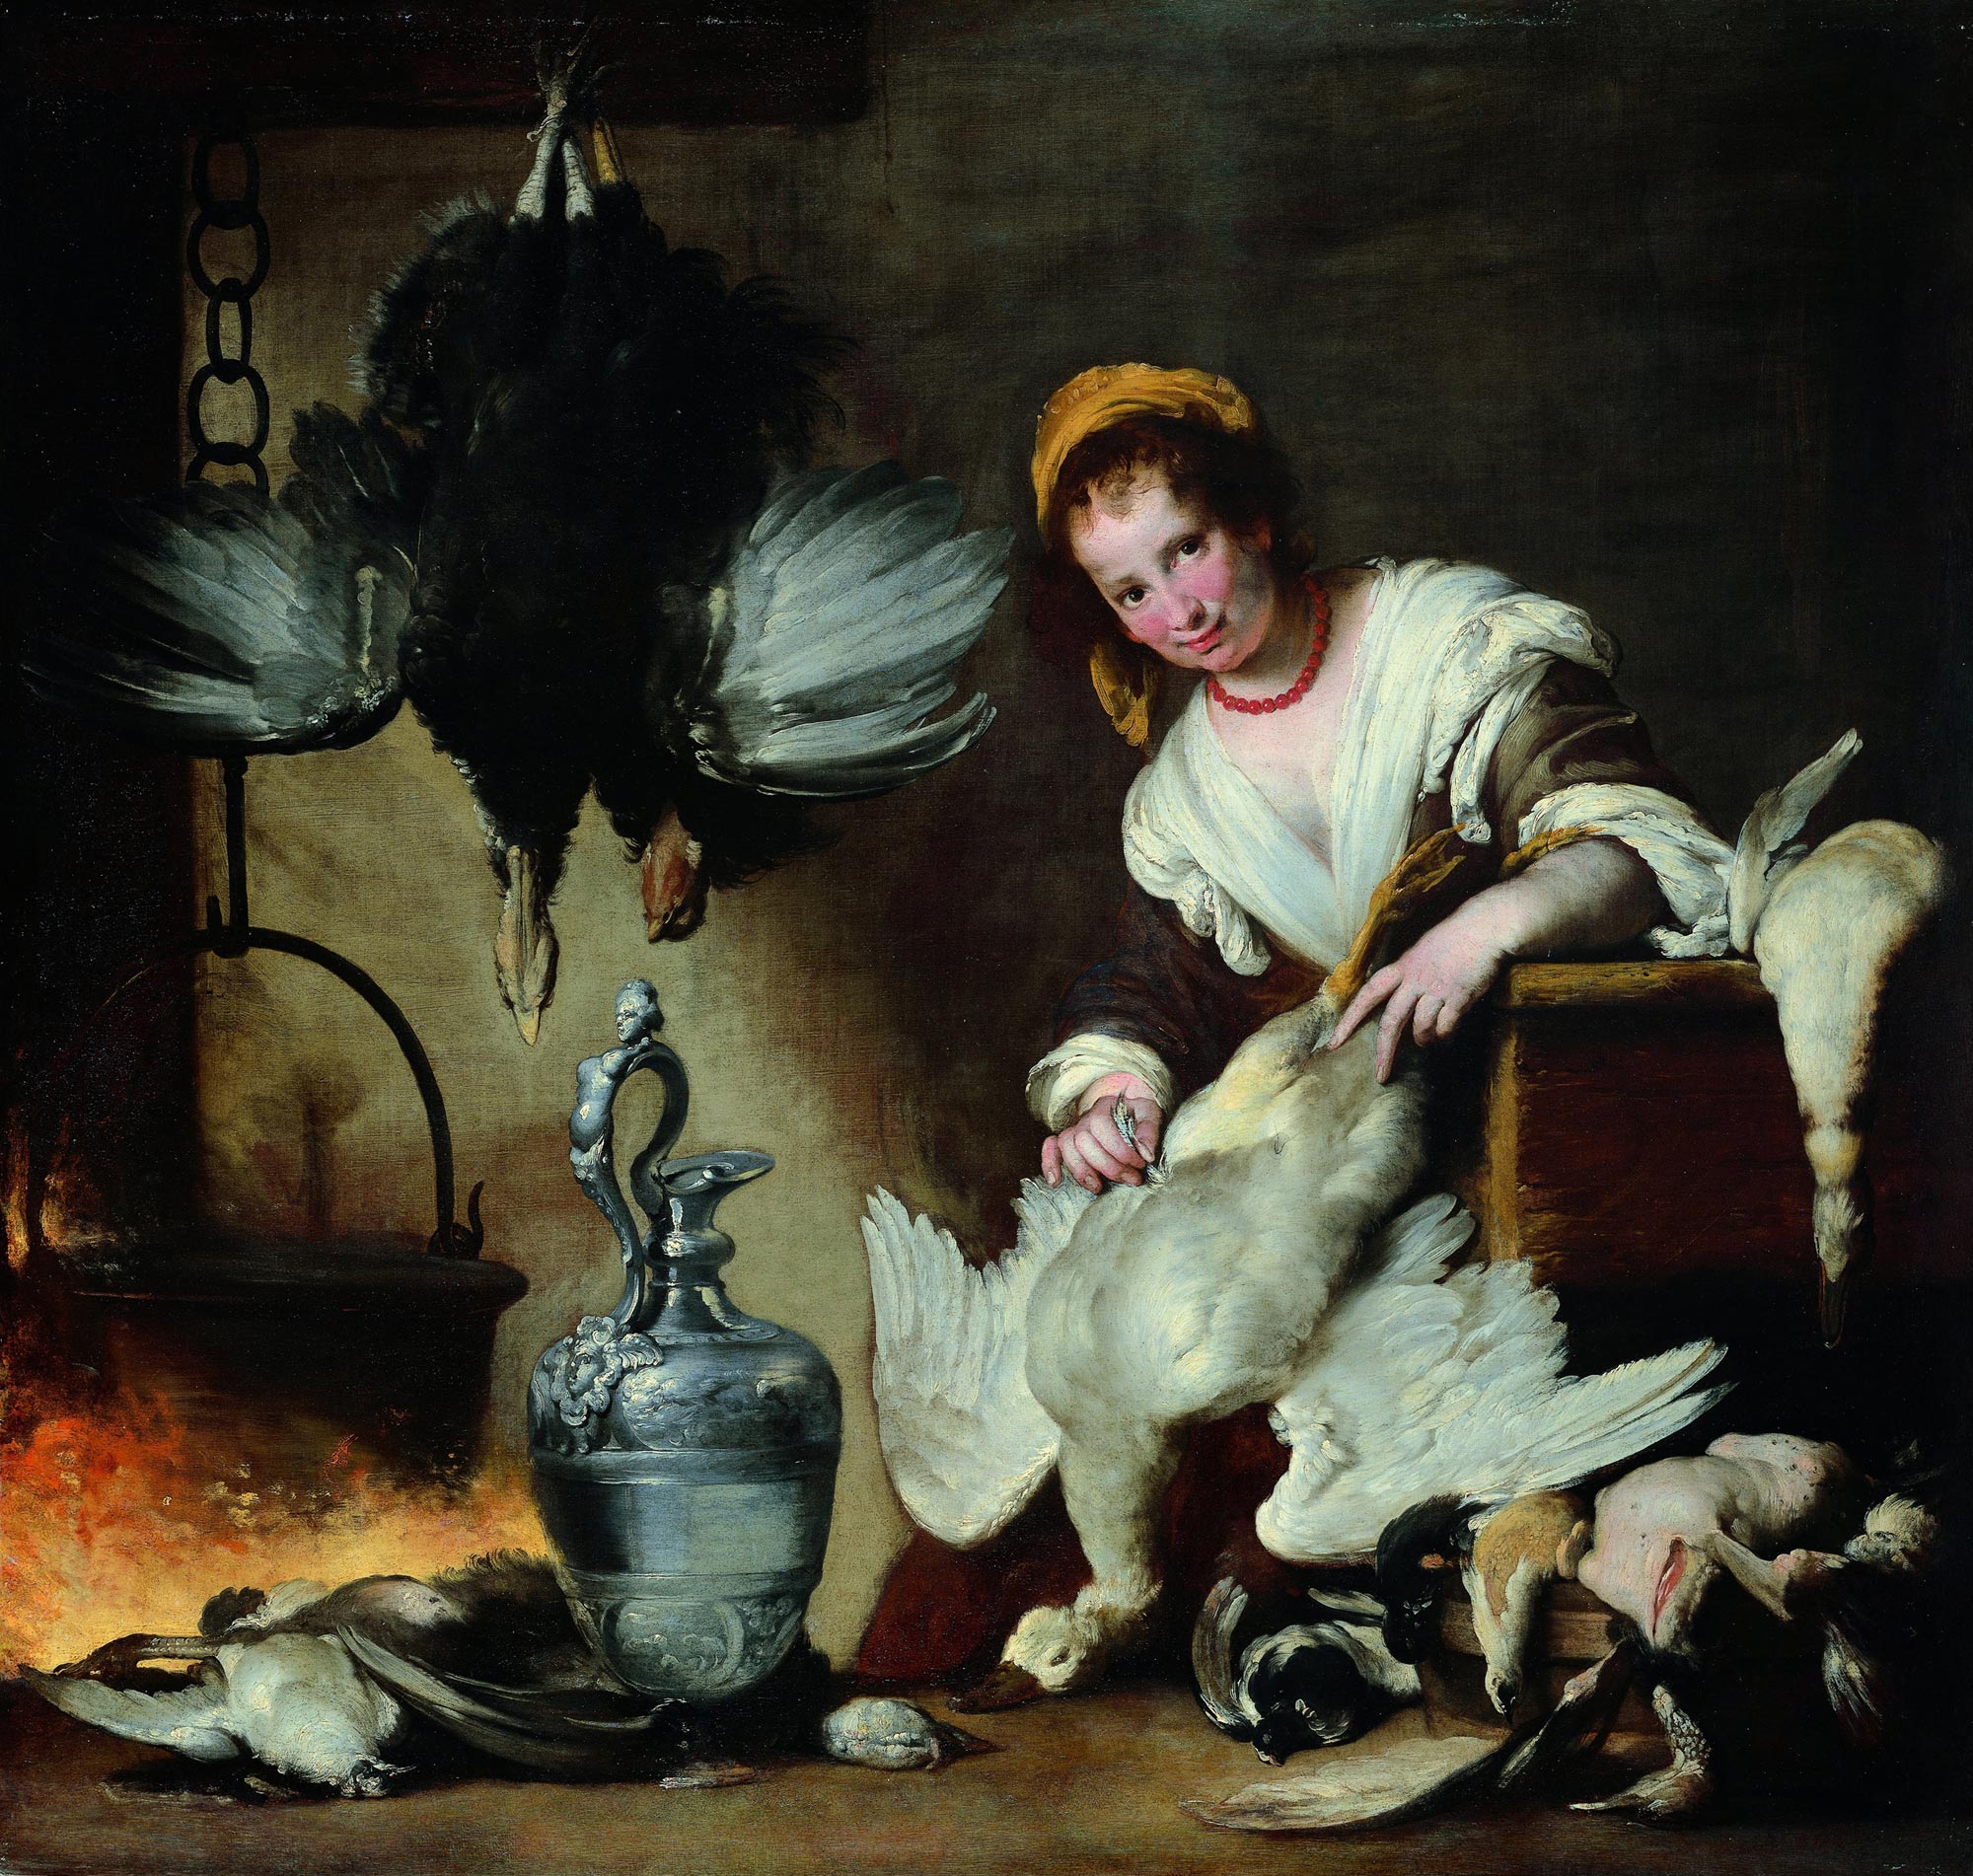 Bernardo Strozzi, The Cook (c. 1625; oil on canvas, 176 x 185 cm; Genoa, Musei di Strada Nuova - Palazzo Rosso)